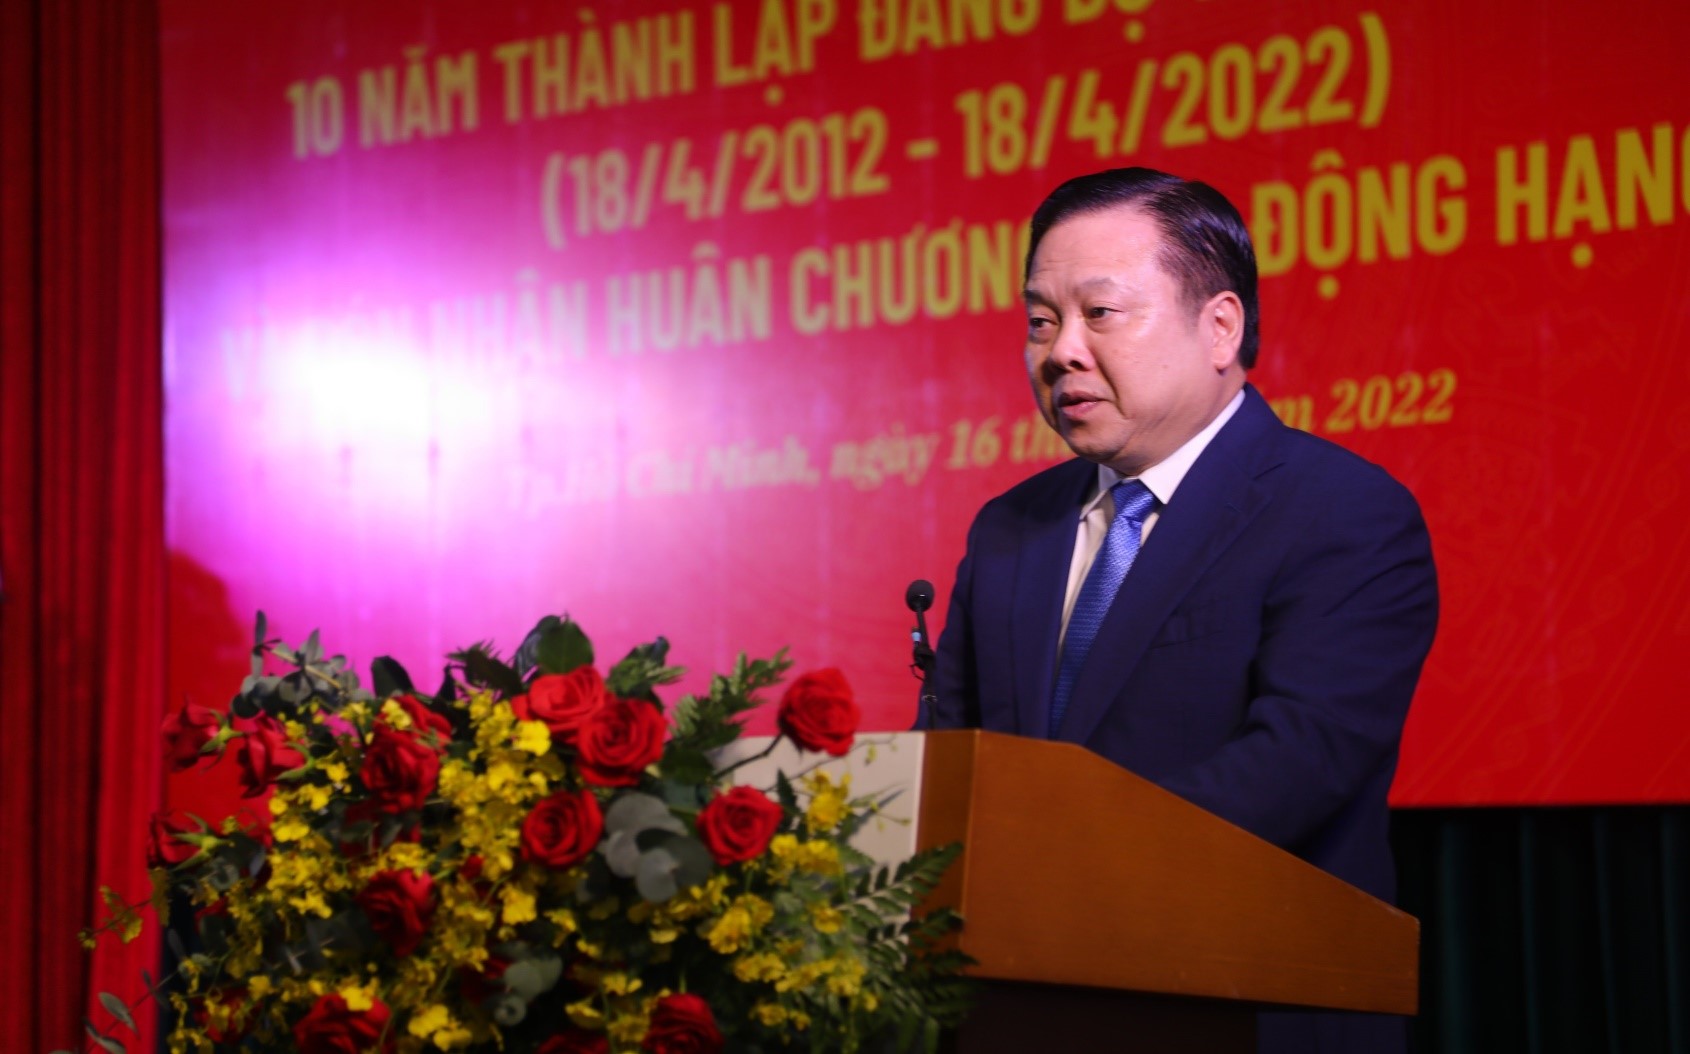 Đồng chí Nguyễn Hoàng Anh – Ủy viên BCH Trung ương Đảng, Chủ tịch UBQLVNN tại doanh nghiệp phát biểu chỉ đạo tại Lễ kỷ niệm